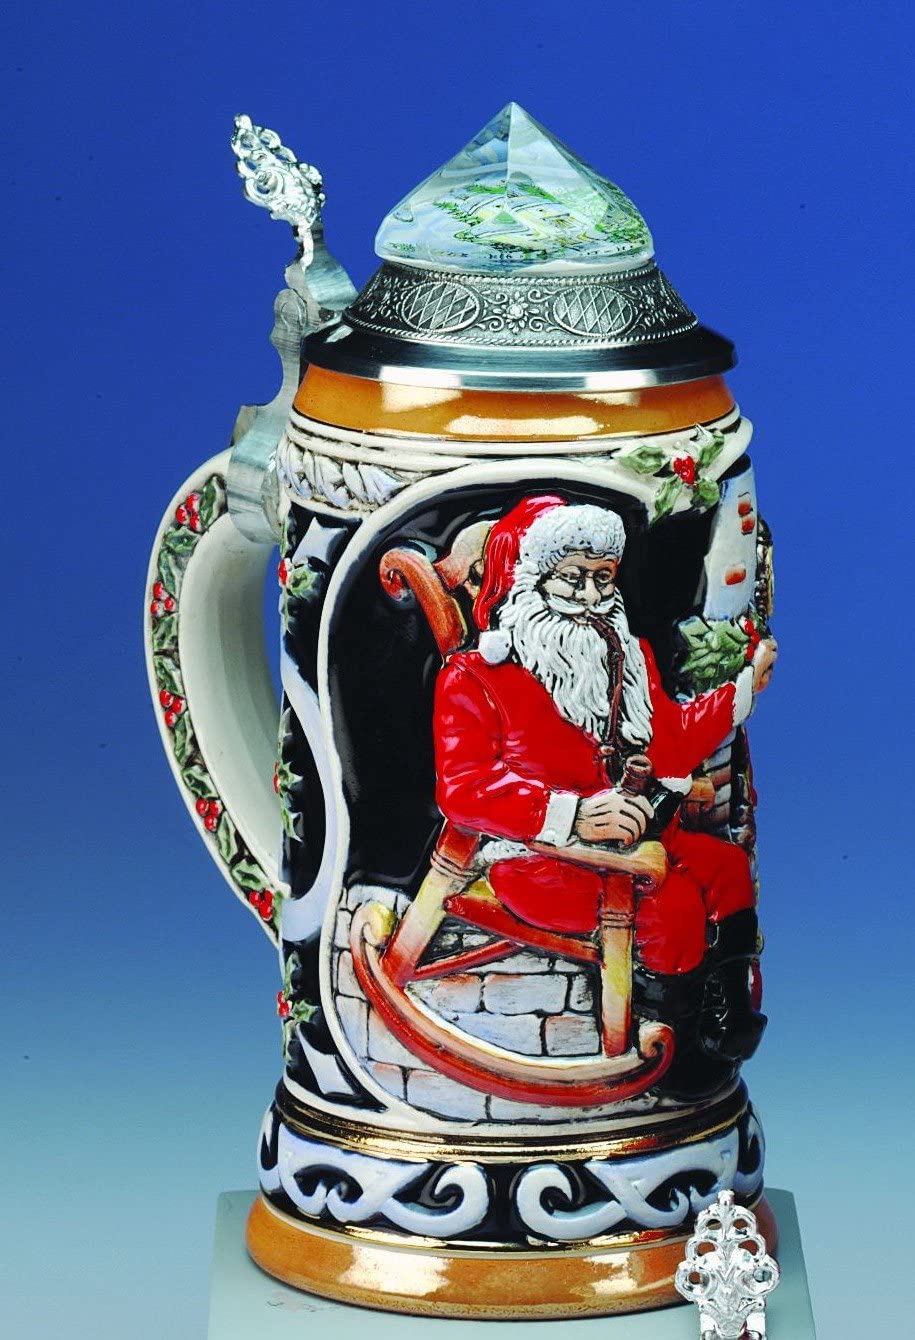 King-  Aufwendiger Relief Bierkrug - Santa Claus mit Kristalldeckel- Kapelle- kobalt- German Beer Stein, Beer Mug - Feinsteinzeug, handbemalt mit Deckel aus Zinn 97% limitiert